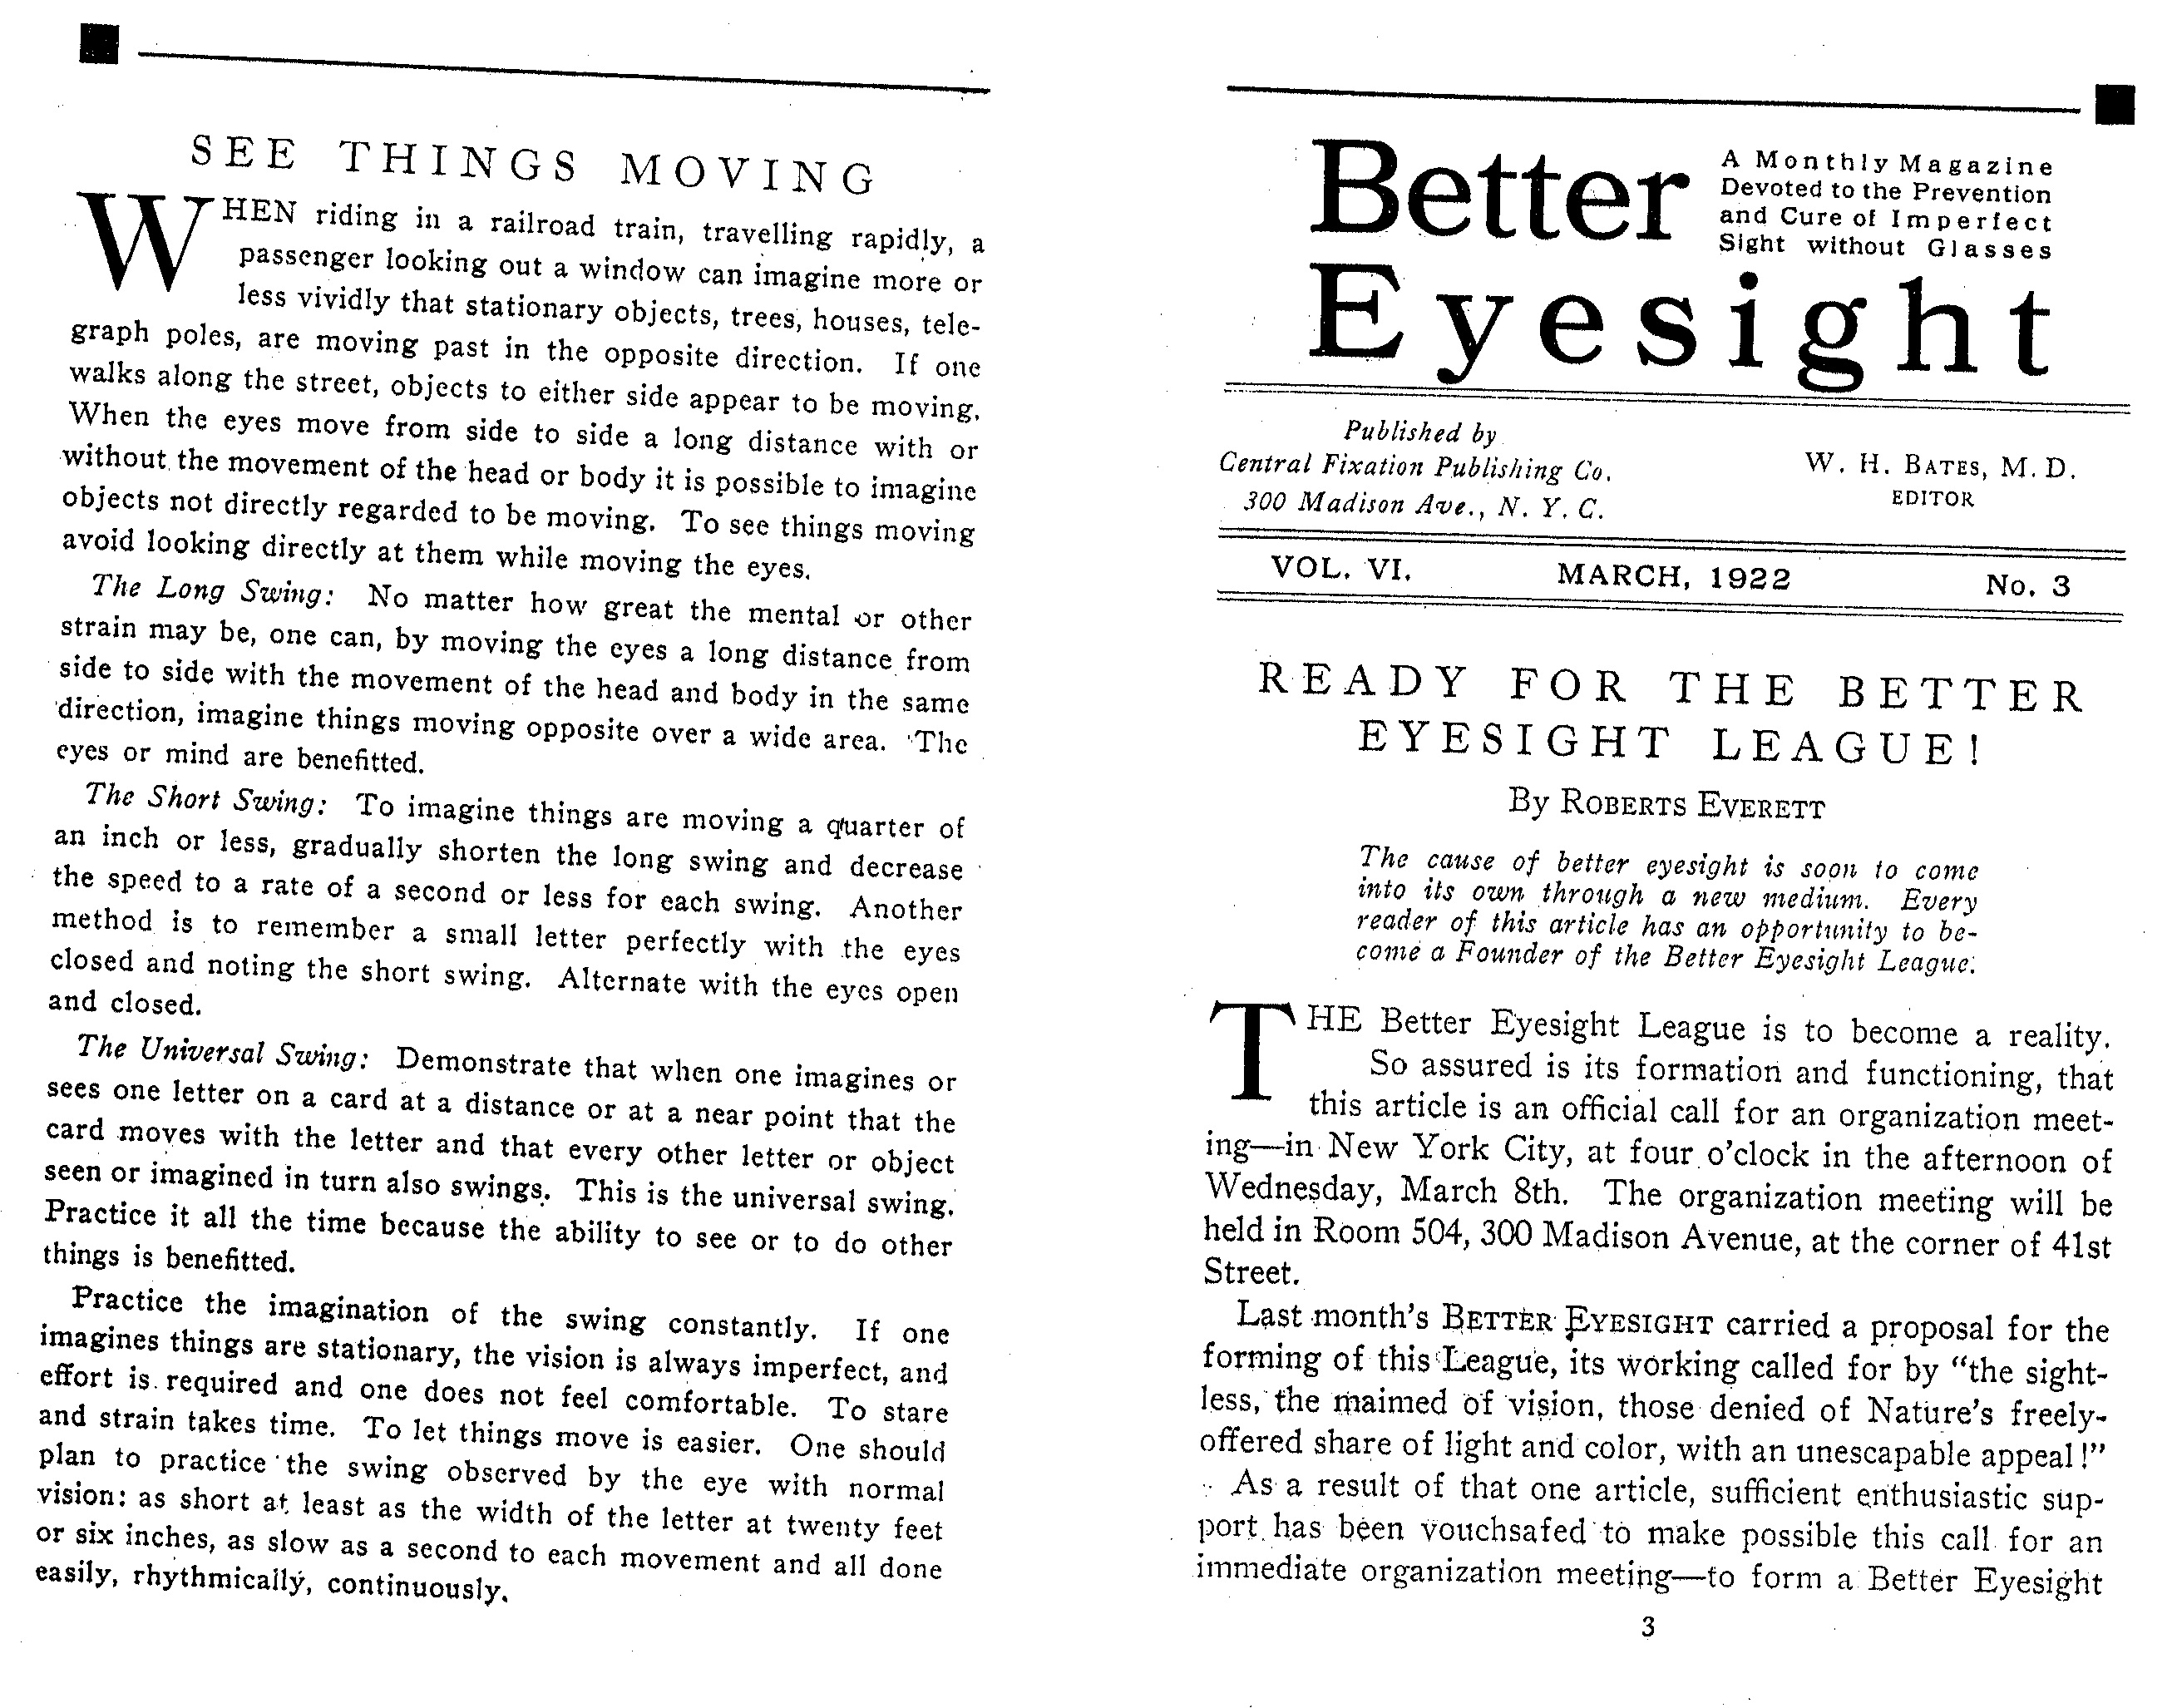 2 Better Eyesight League